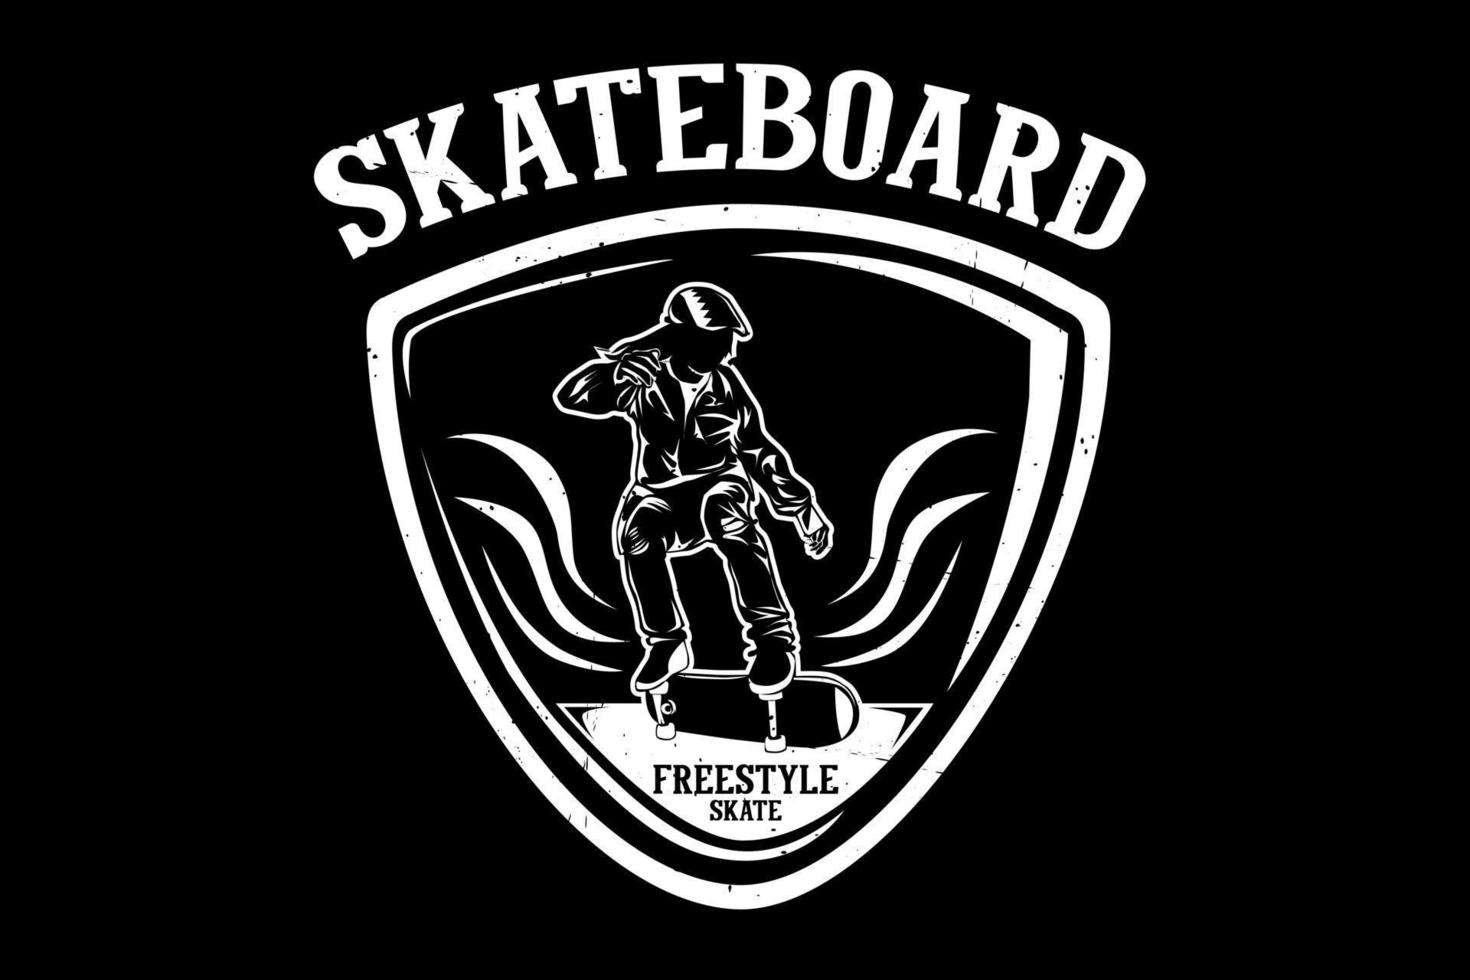 Skateboard skate freestyle silhouette design vector